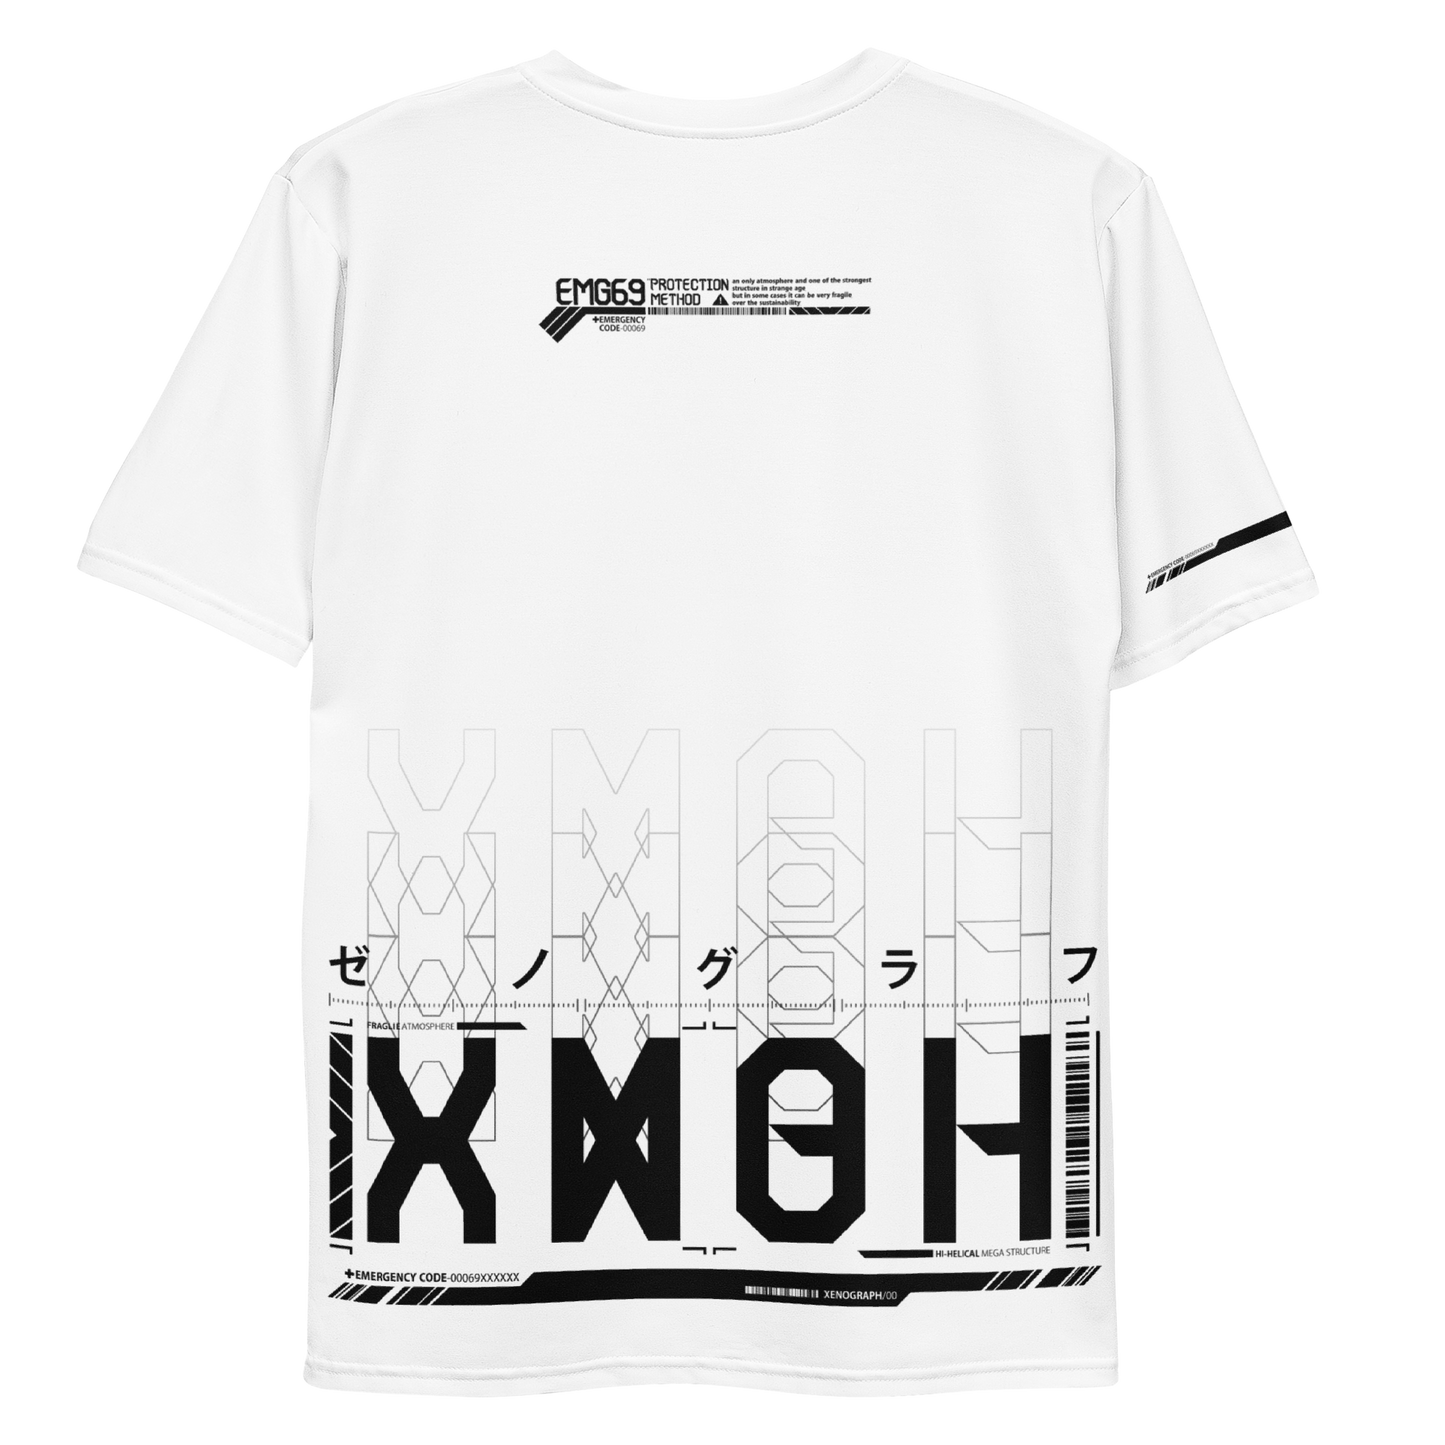 XENOGRAPH ver.1.5 [ full print T-shirt ] white